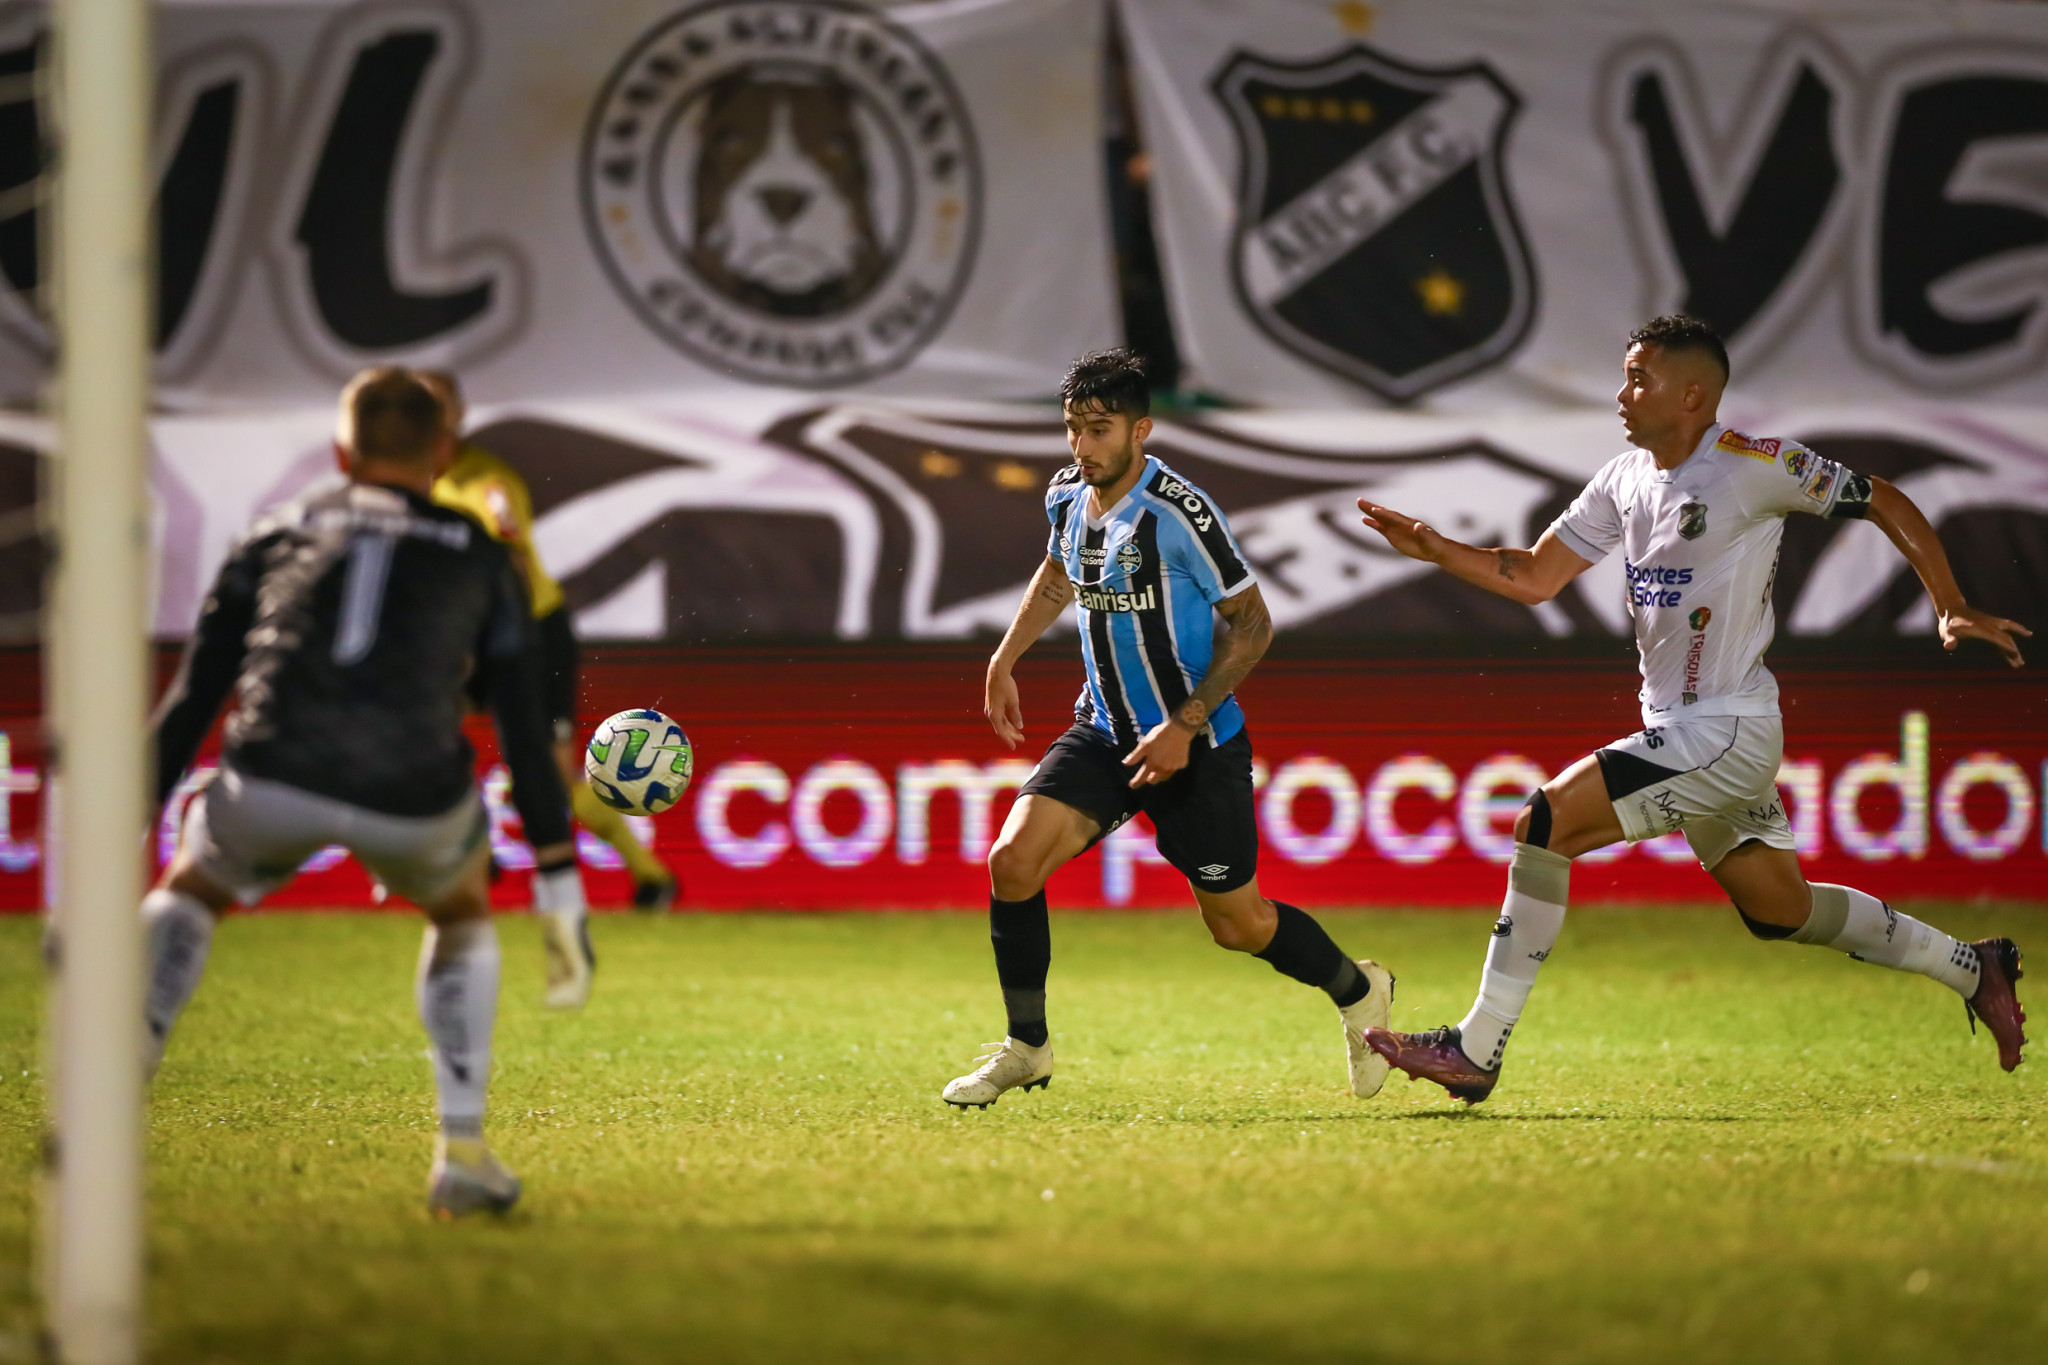 Ceará SC vs Tombense: A Clash of Football Titans